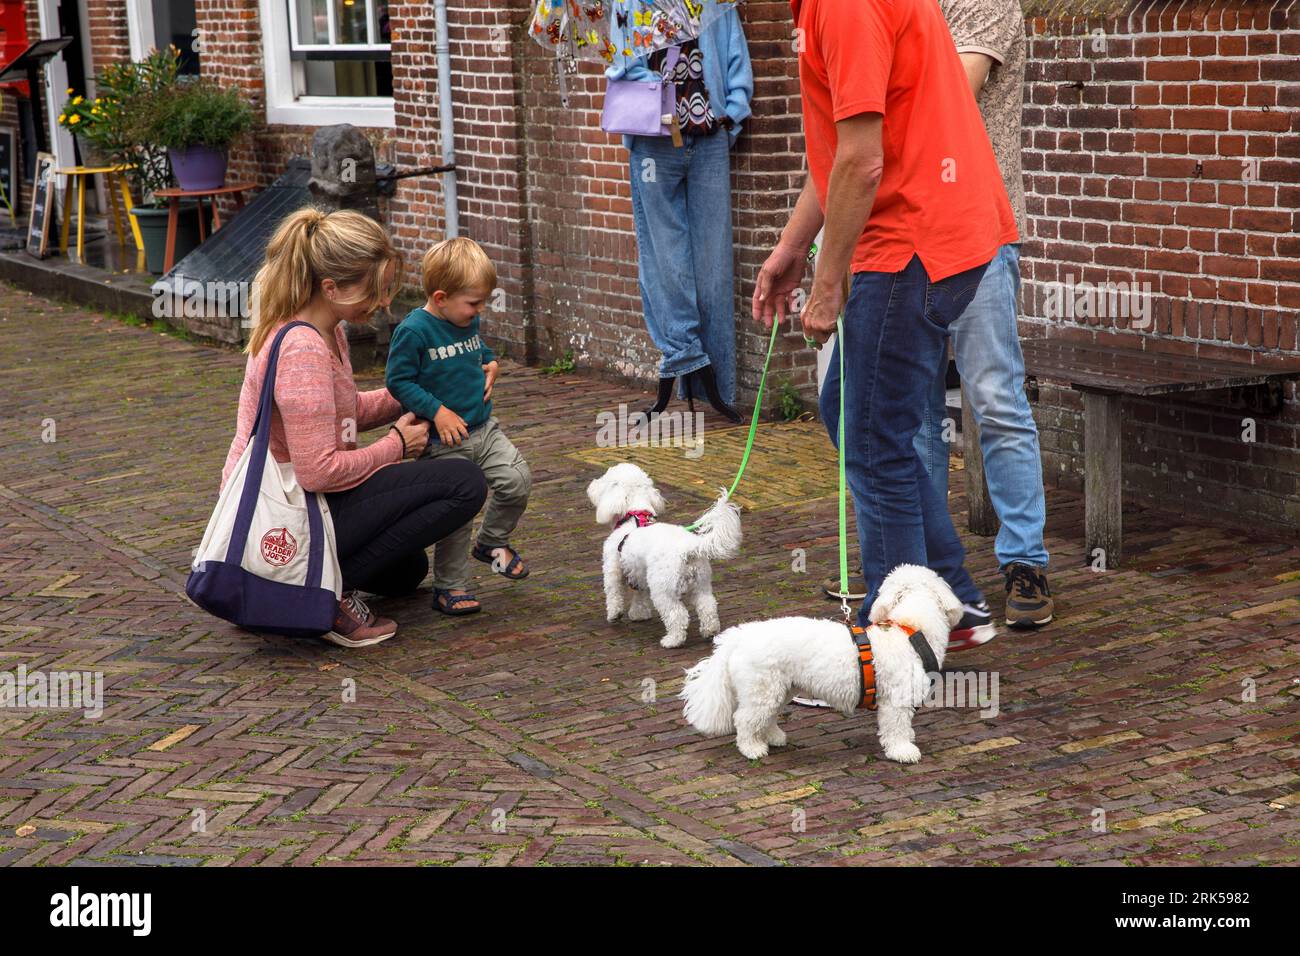 the village Veere on Walcheren, little boy meets dogs, Zeeland, Netherlands. der Ort Veere auf Walcheren, kleiner Junge begegnet Hunden, Zeeland, Nied Stock Photo